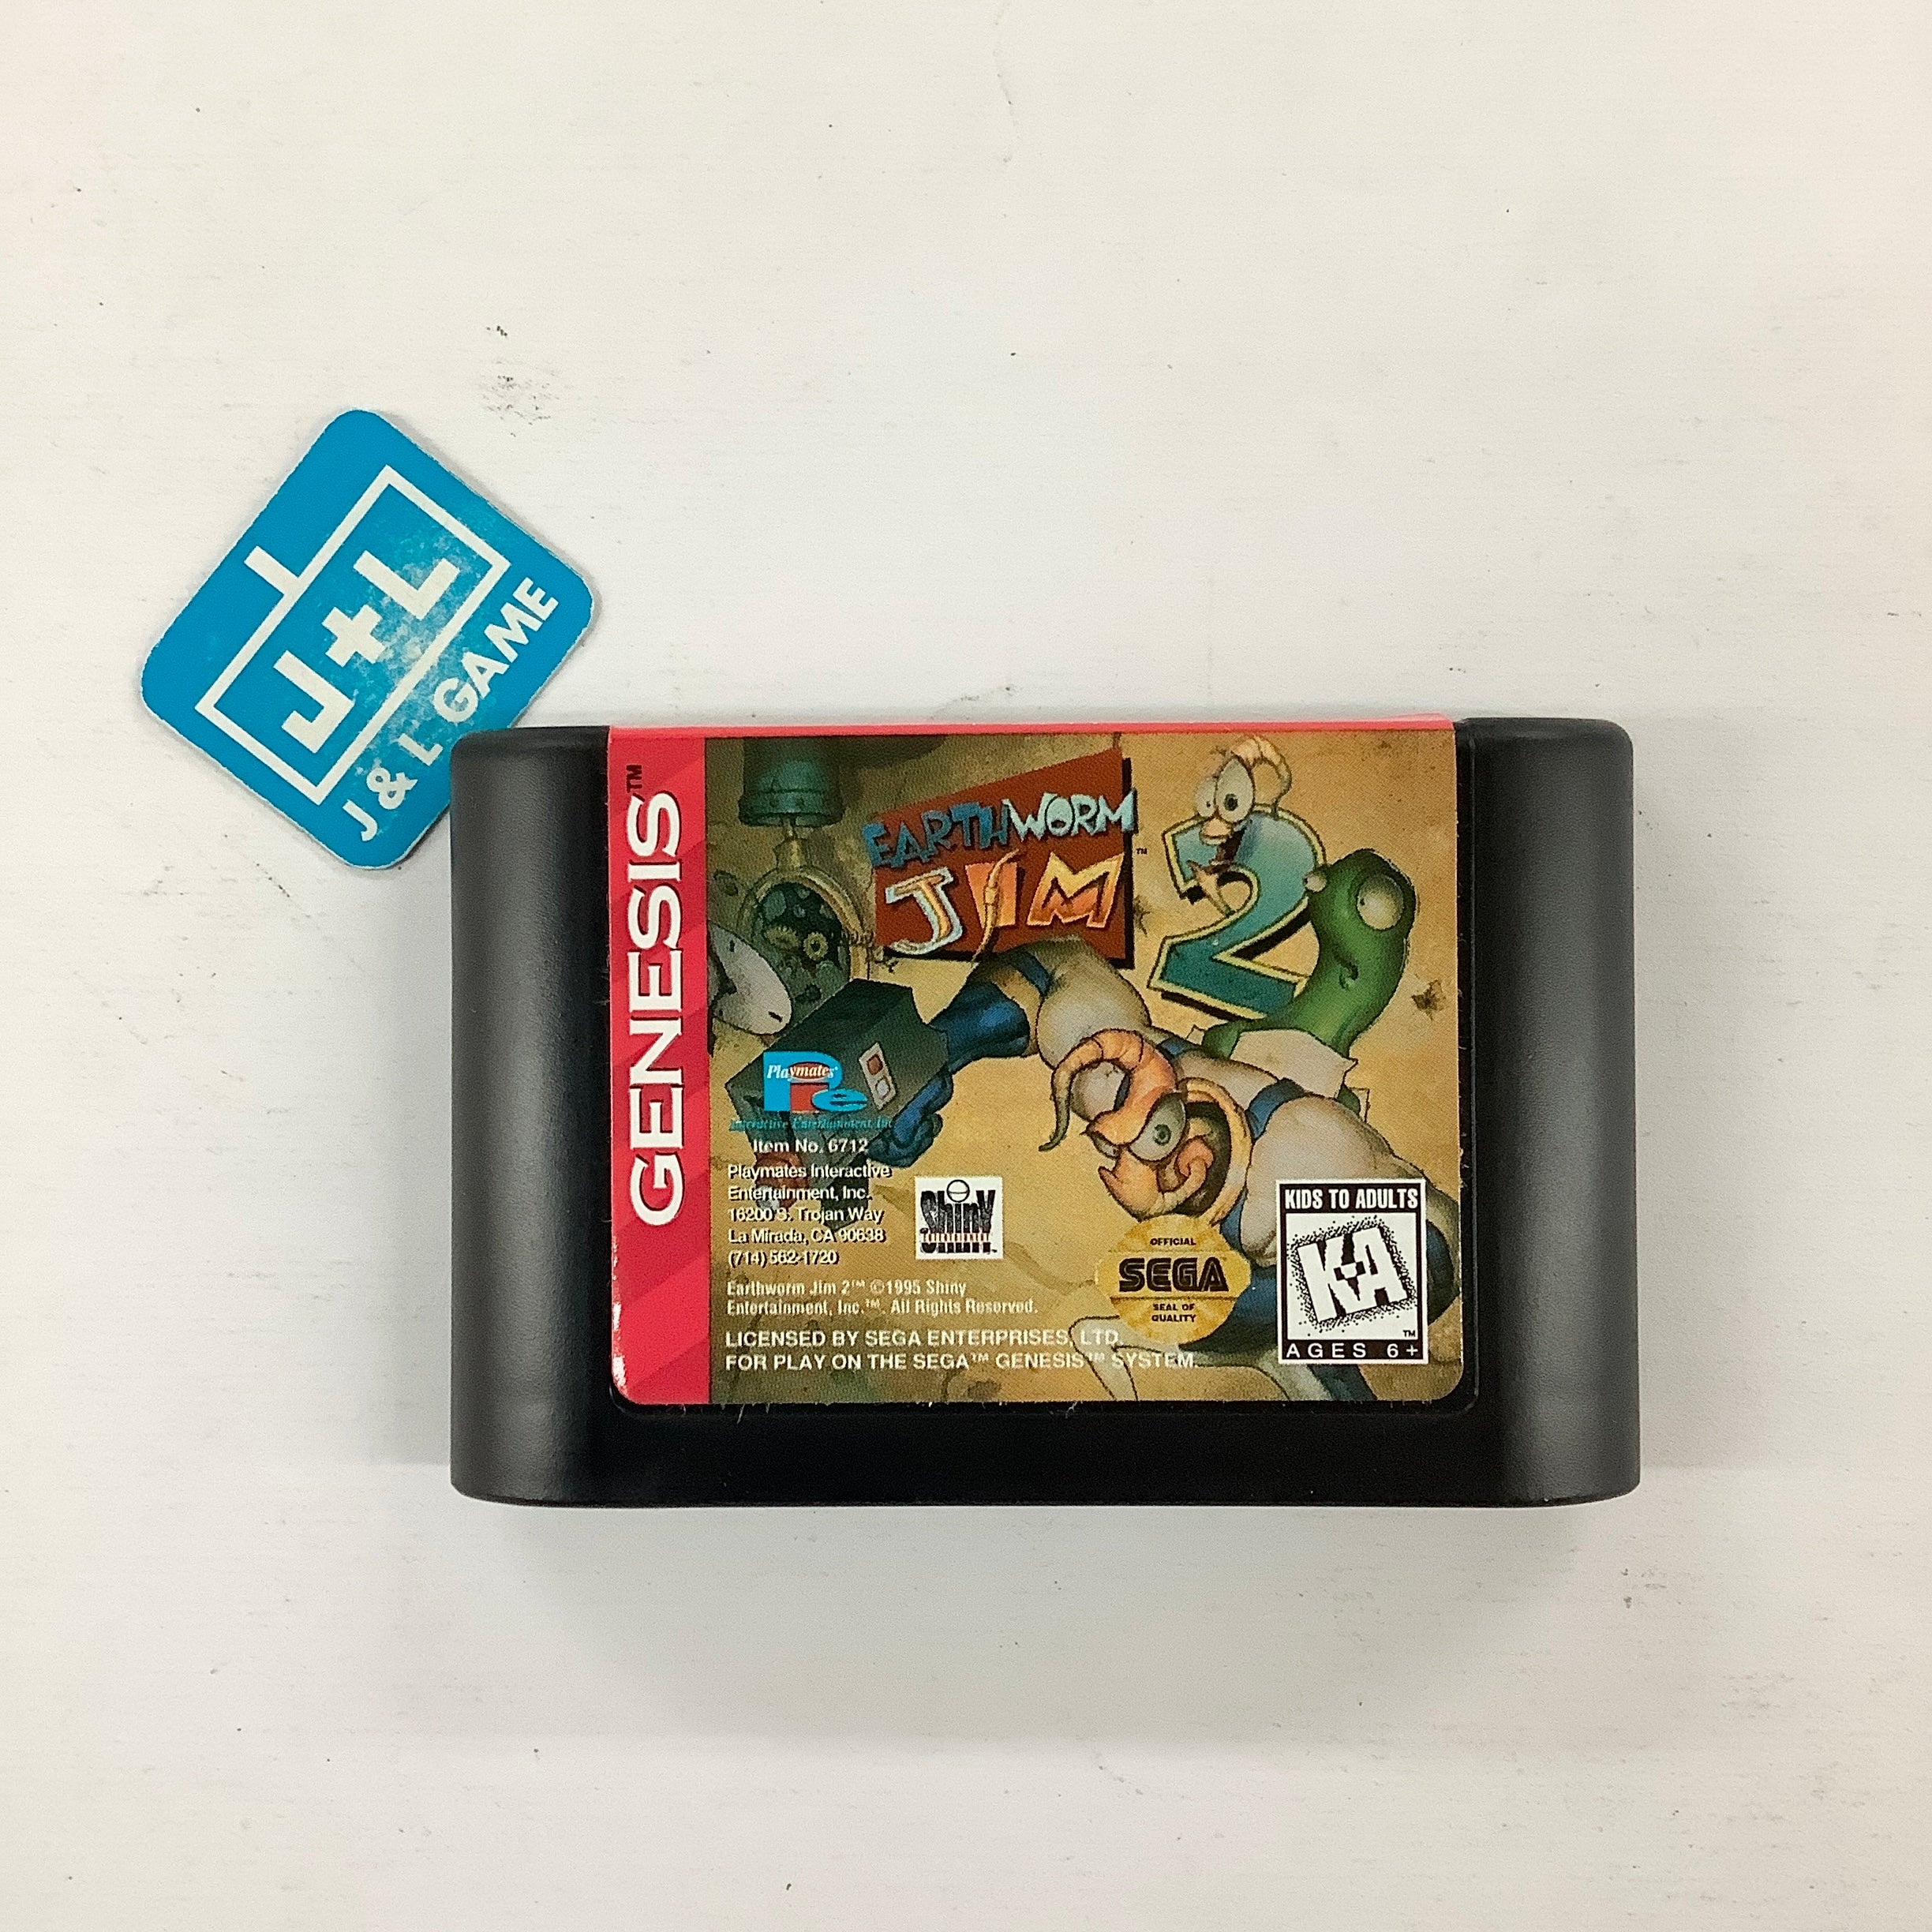 Earthworm Jim 2 - (SG) SEGA Genesis [Pre-Owned] Video Games Playmates   